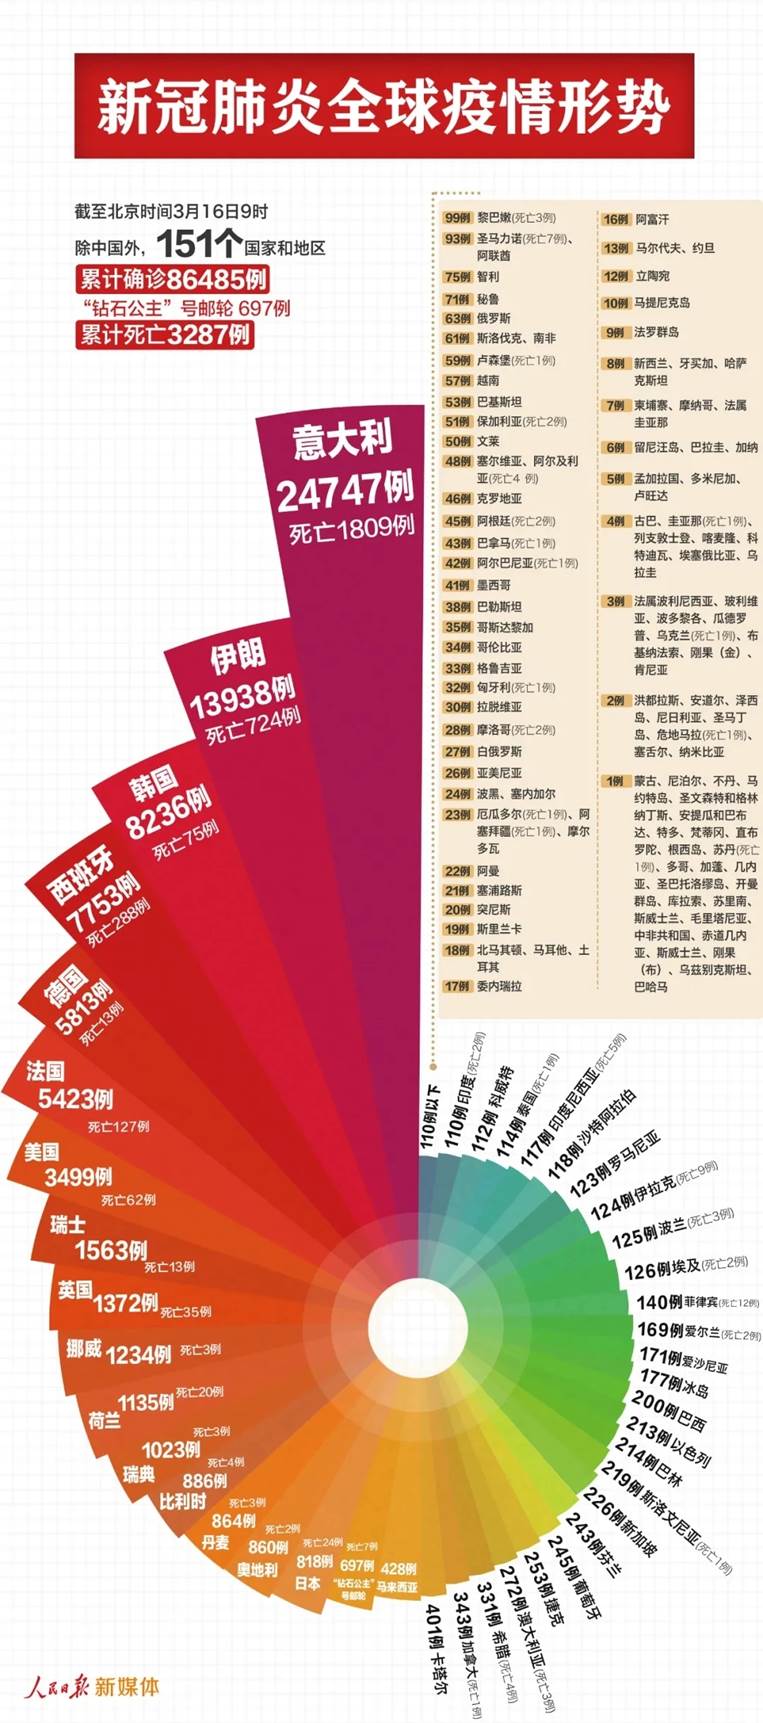 《中国以外87182例，反超了！》灾难新闻缺失的人文关怀